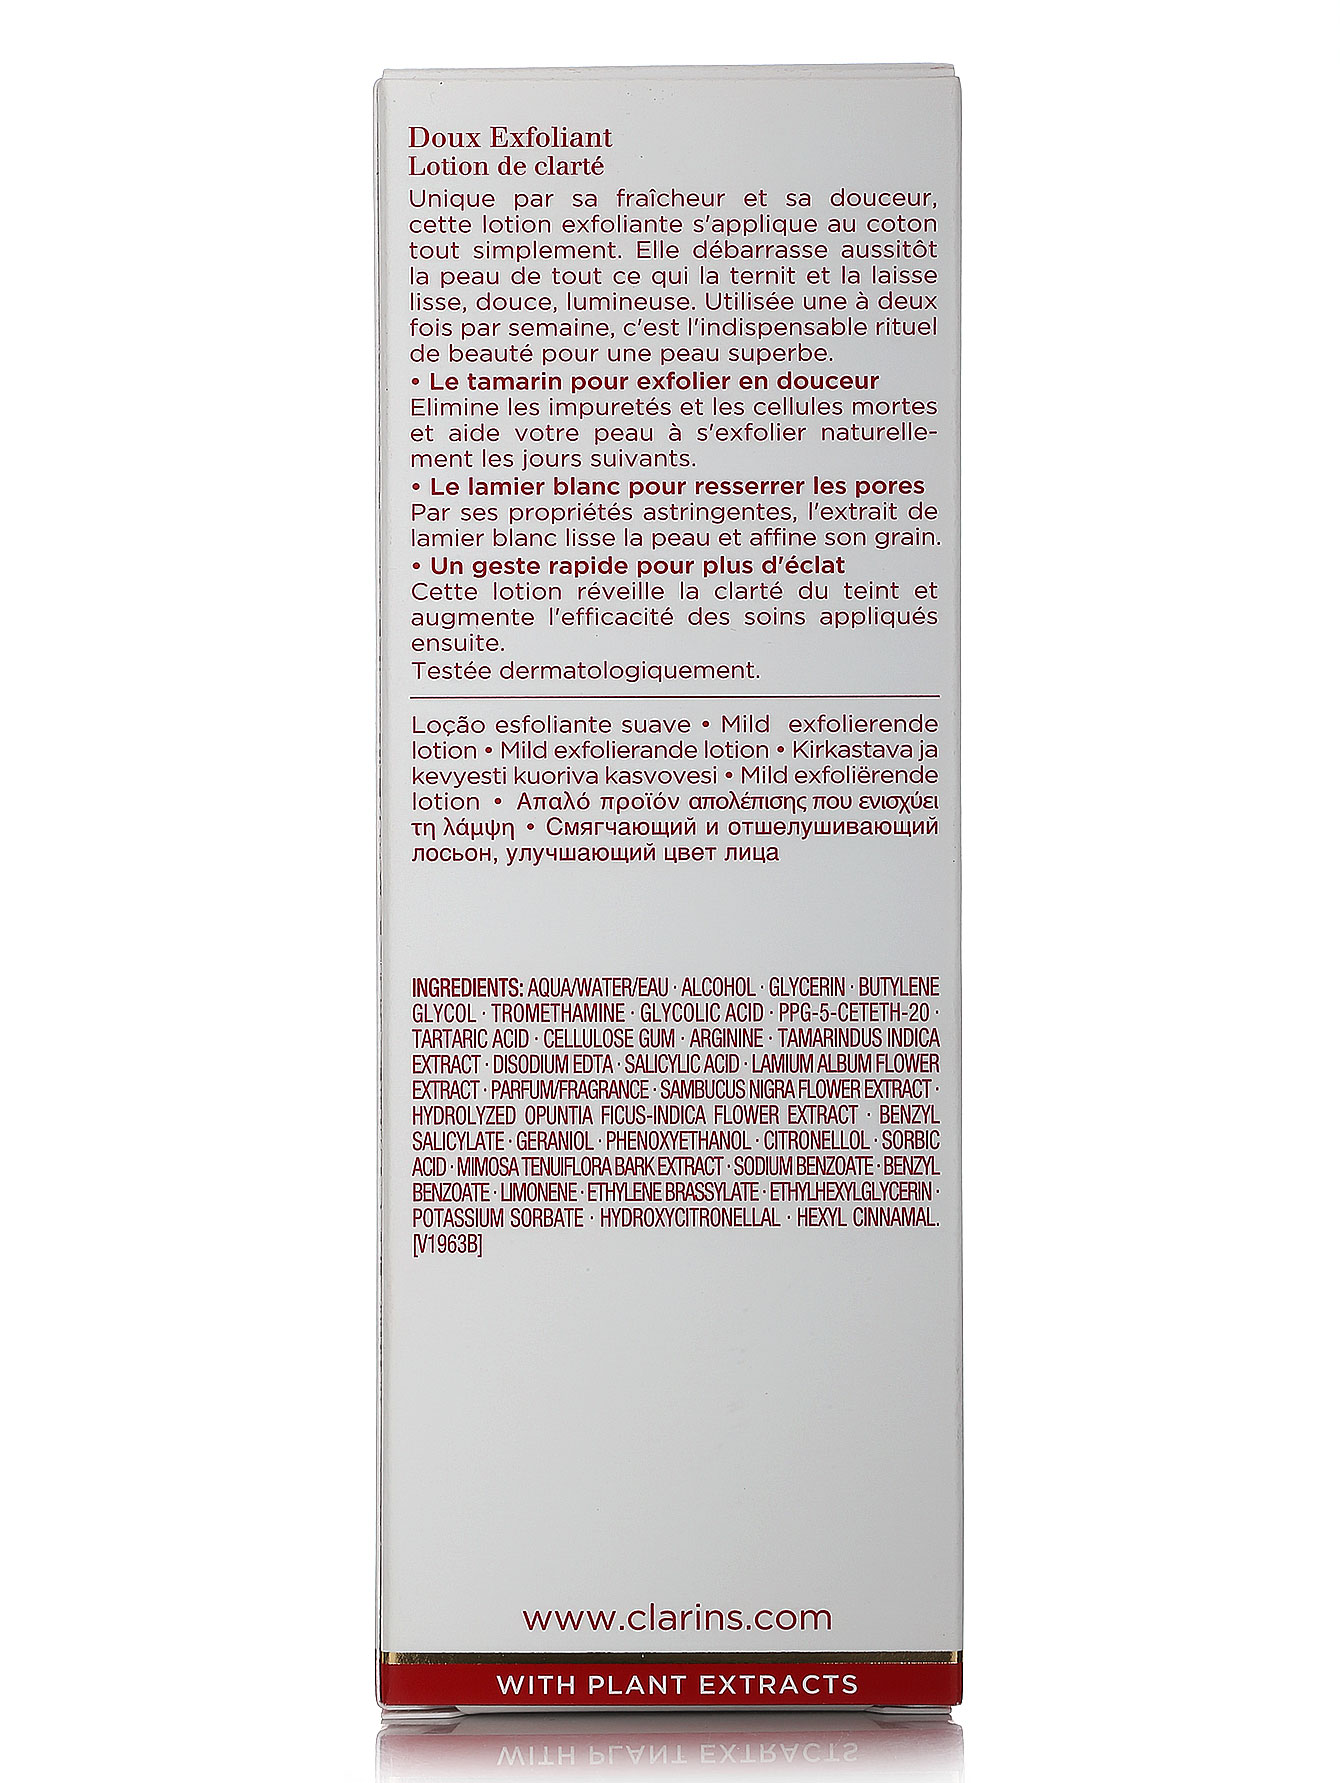  Смягчающий лосьон - Doux Exfoliant Face Care, 125ml - Модель Верх-Низ